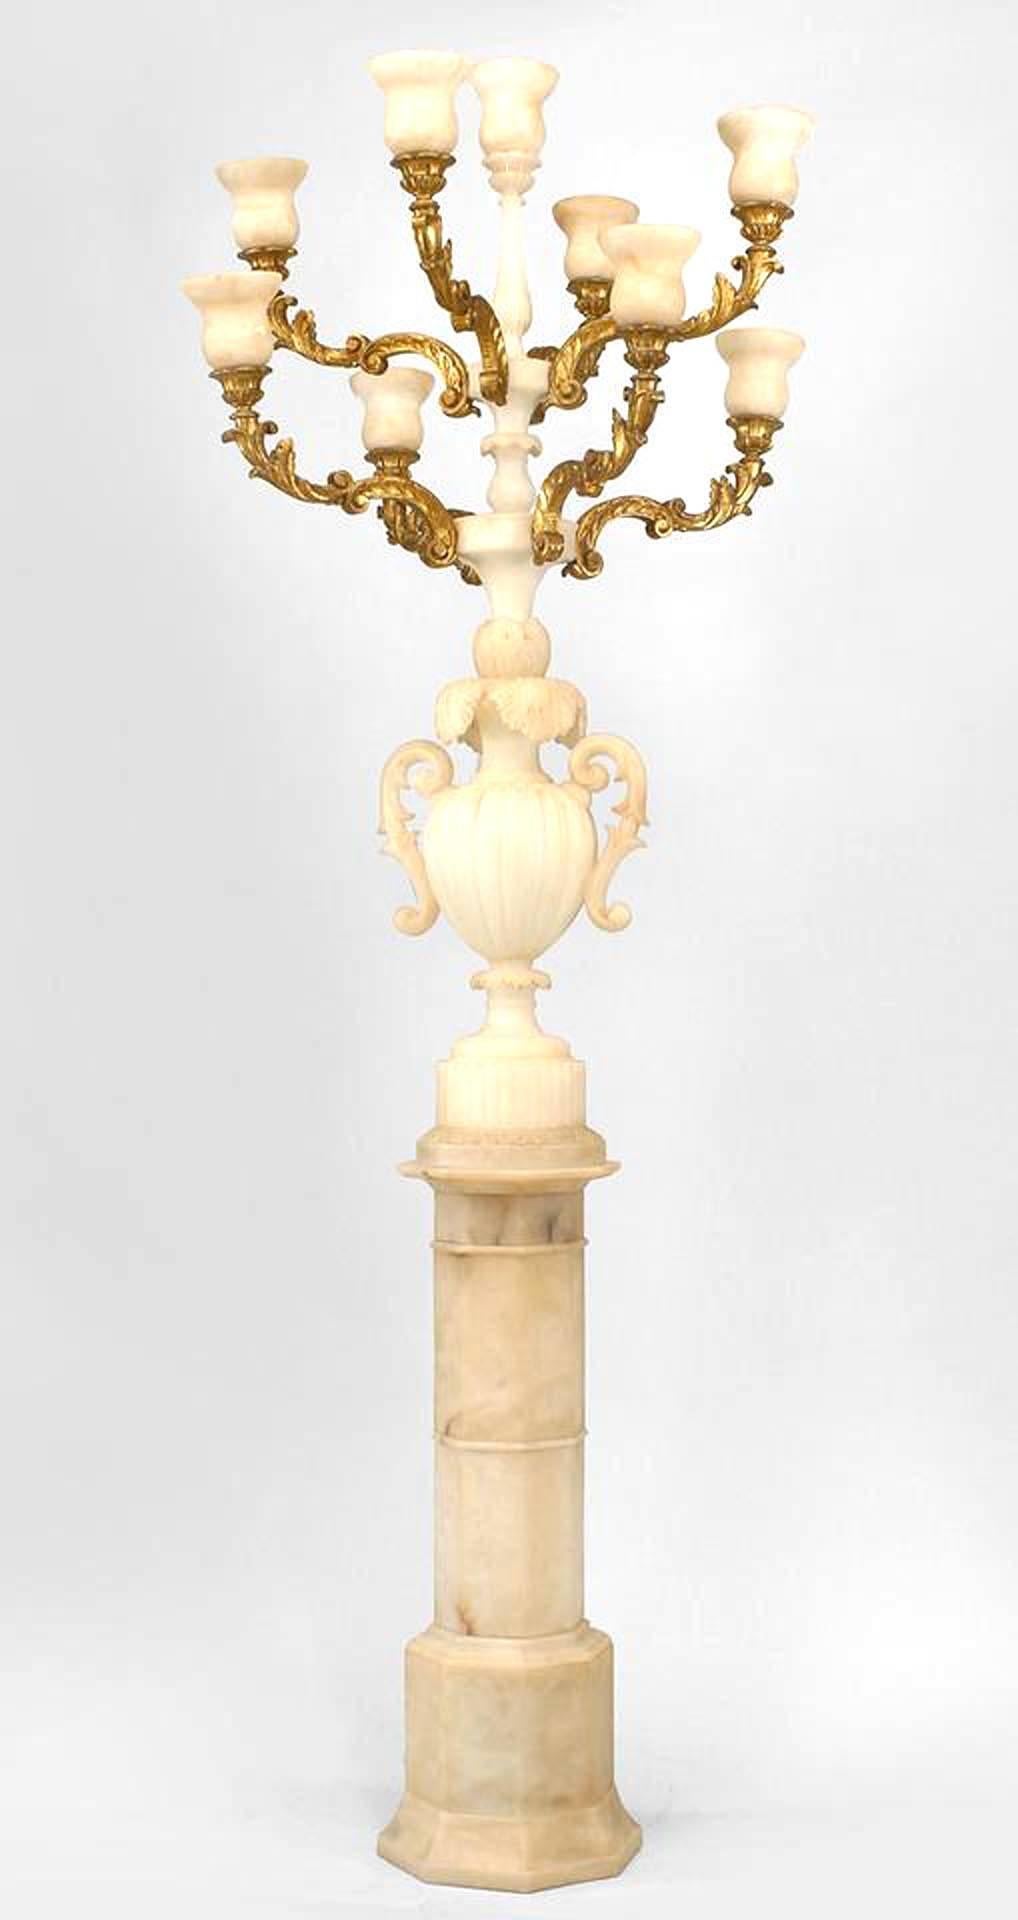 Paire de torchères en albâtre blanc de style Rococo (datées de 1932) avec une urne sculptée avec des poignées supportant 8 bras sculptés dorés, le tout monté sur une base de piédestal (PRIX PAR PAIRE).
